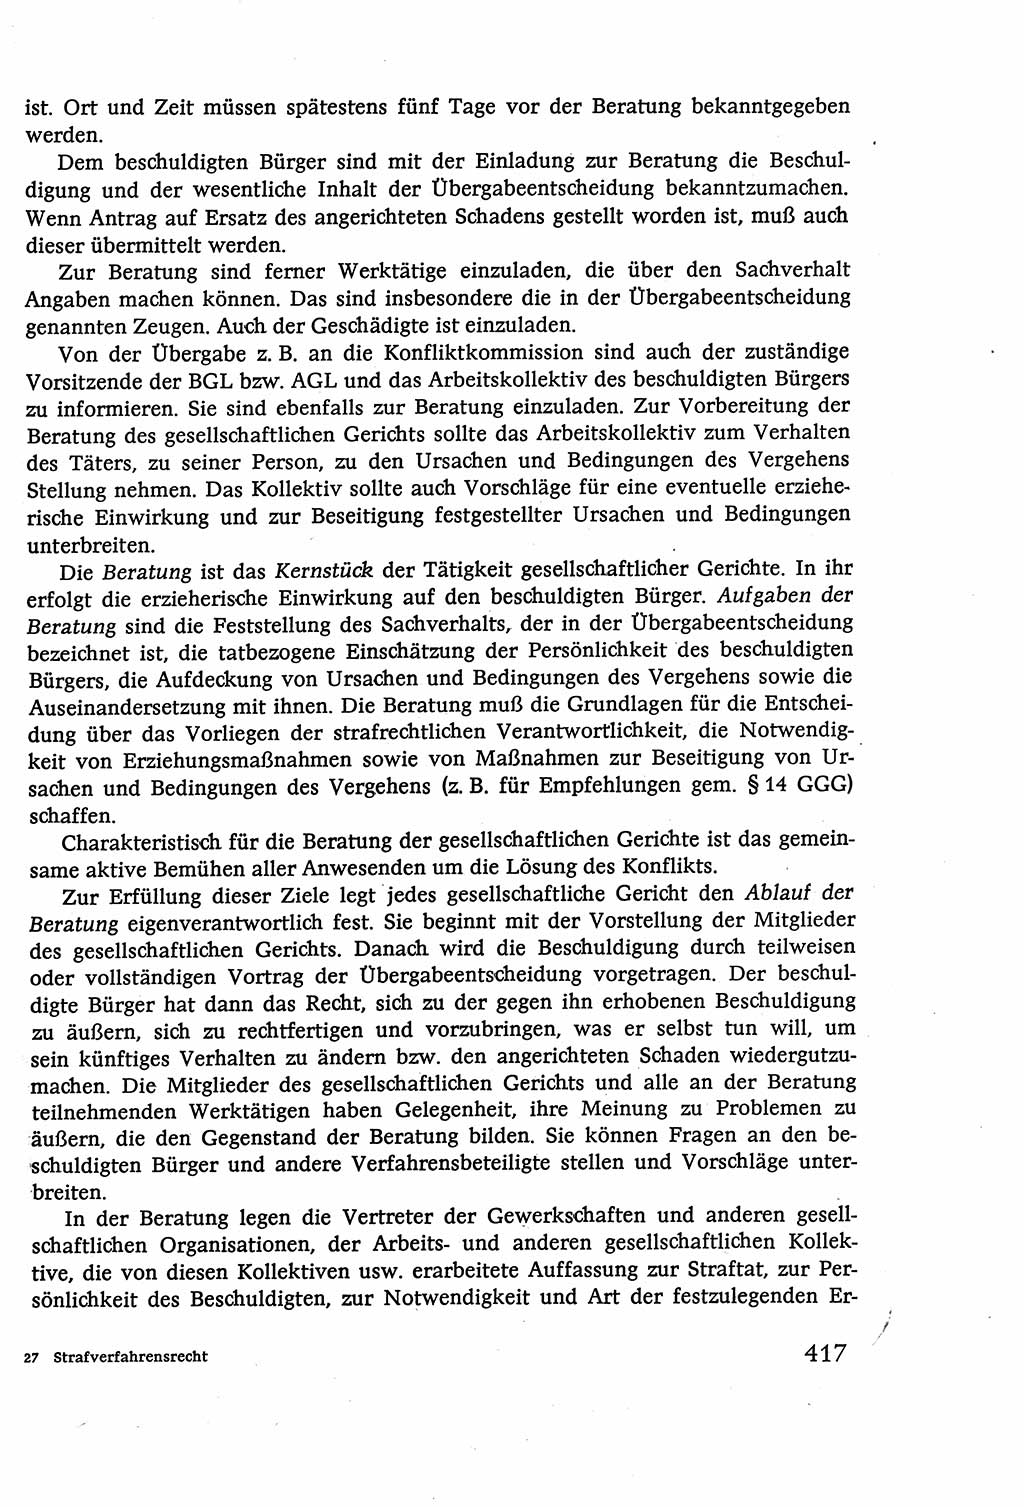 Strafverfahrensrecht [Deutsche Demokratische Republik (DDR)], Lehrbuch 1977, Seite 417 (Strafverf.-R. DDR Lb. 1977, S. 417)